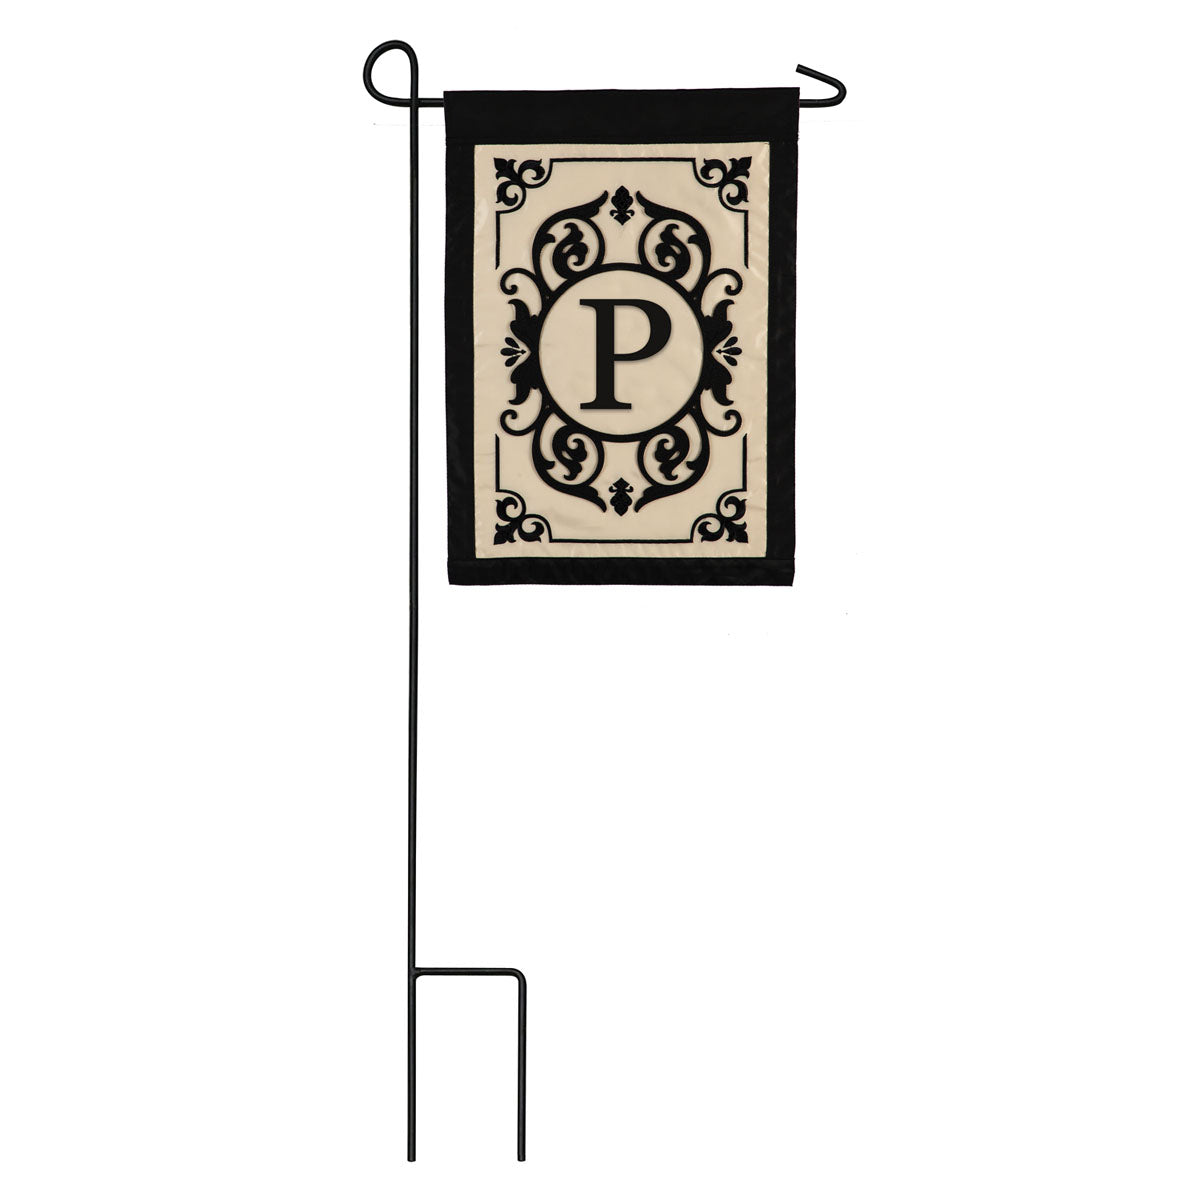 Cambridge Monogram Garden Applique Flag, "P"